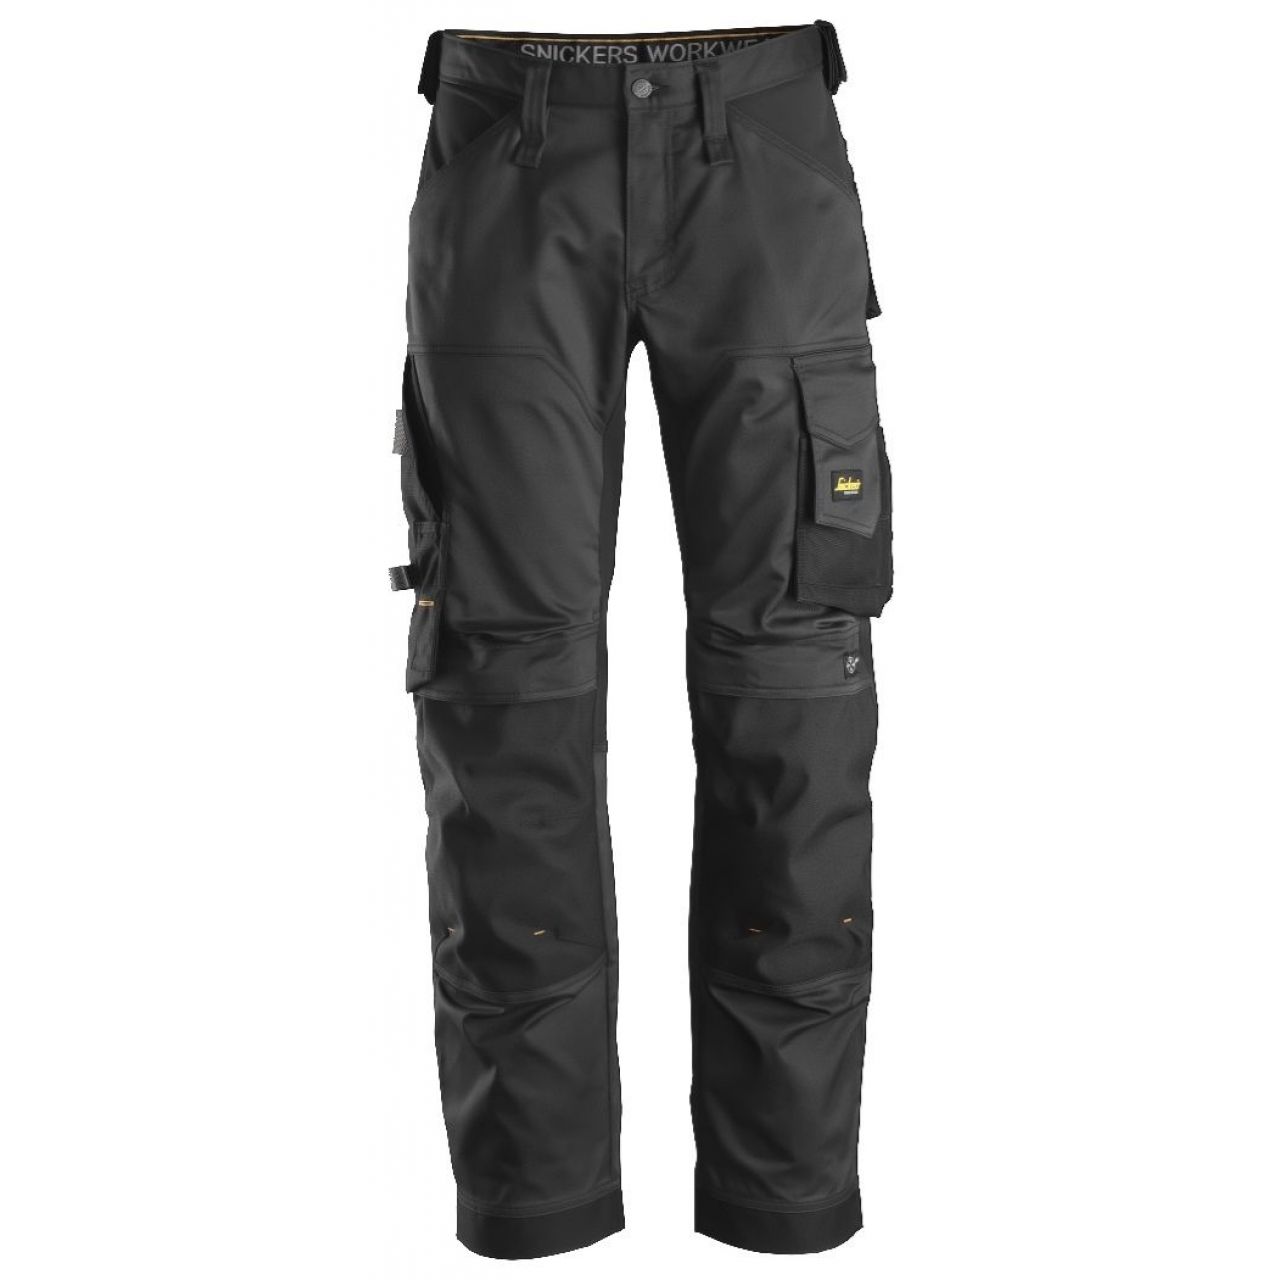 Pantalon elastico ajuste holgado AllroundWork negro talla 162